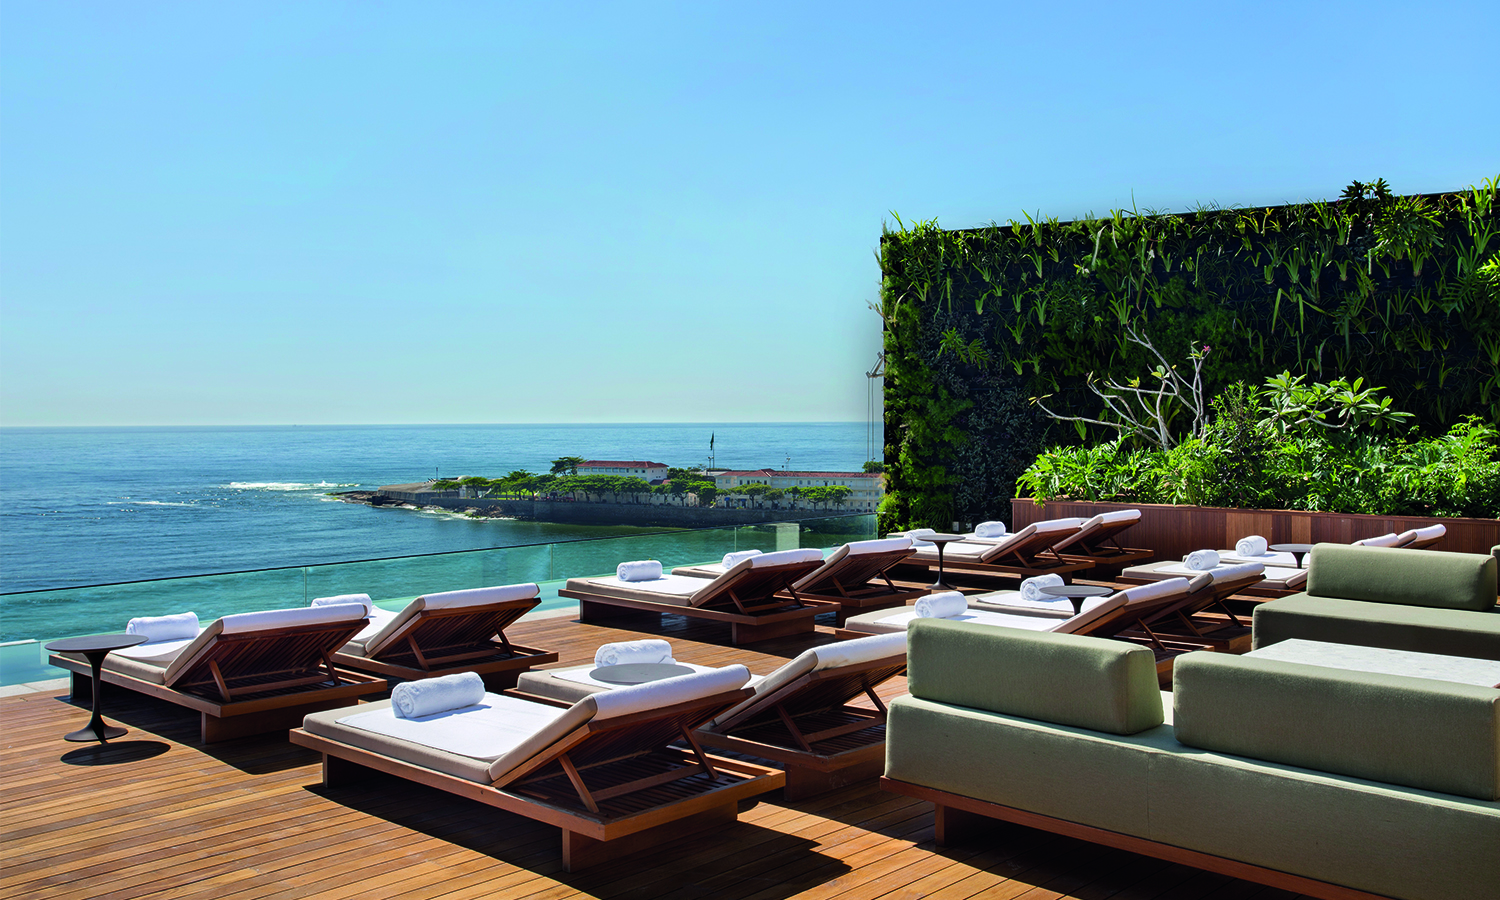 La visión desde la piscina es una de las grandes experiencias que ofrece el Hotel Emiliano. En la azotea se puede nadar disfrutando de las vistas de la playa de Copacabana